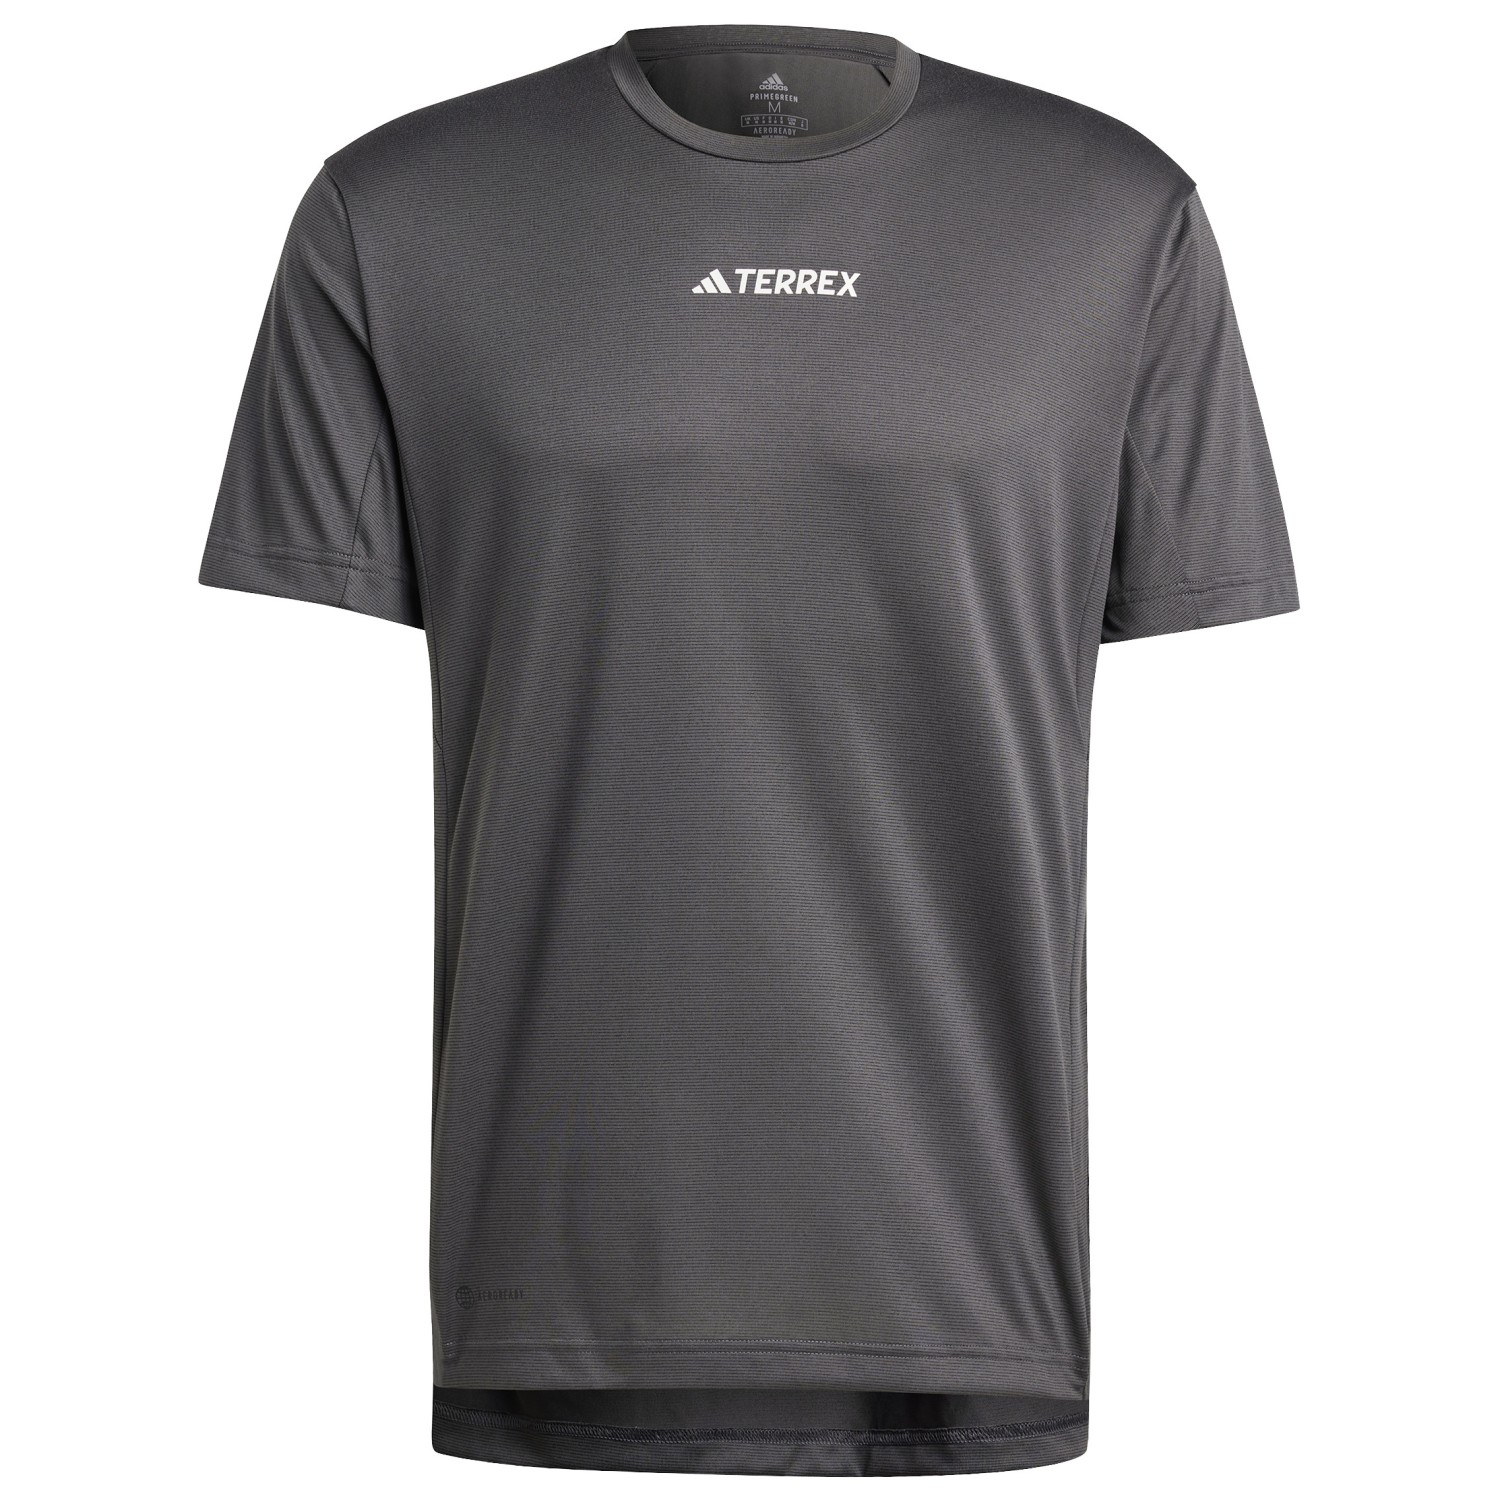 Функциональная рубашка Adidas Terrex Terrex Multi T Shirt, черный